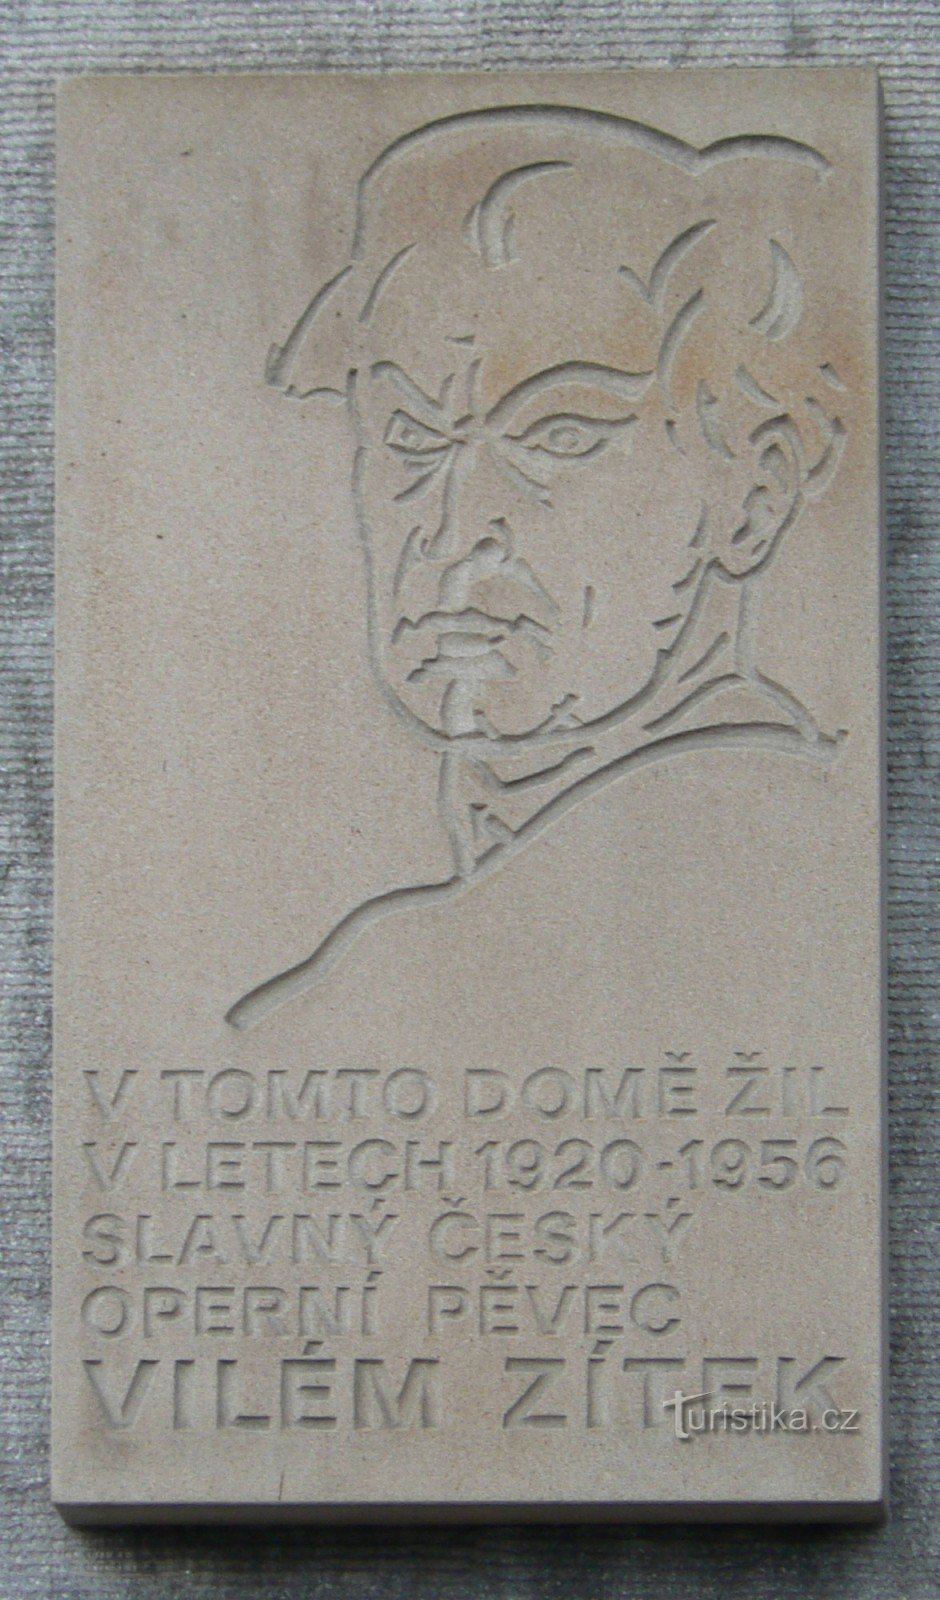 Tấm bảng tưởng niệm Vilém Zítek